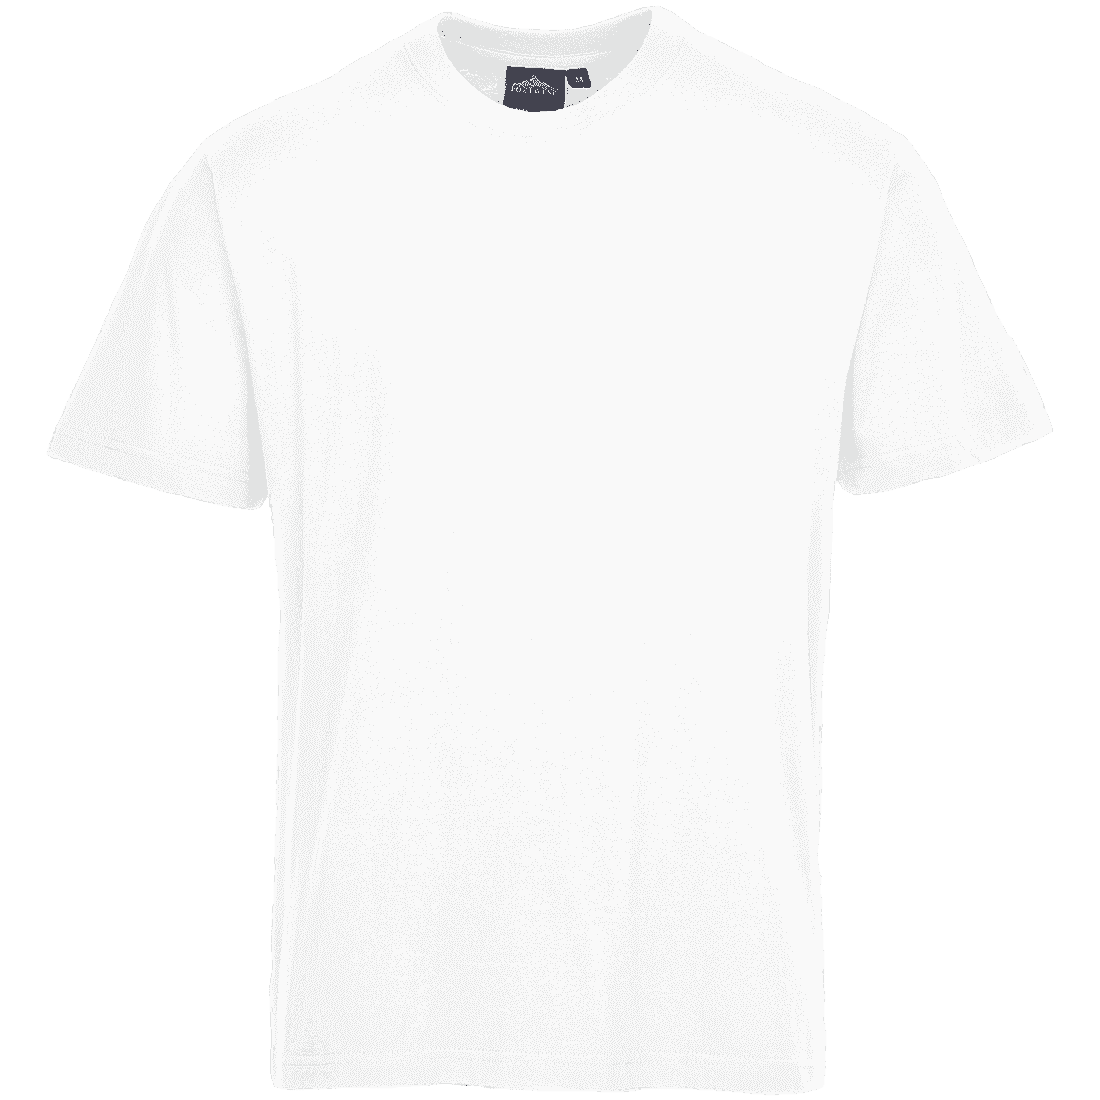 Turin Premium Work T-Shirt B195 White